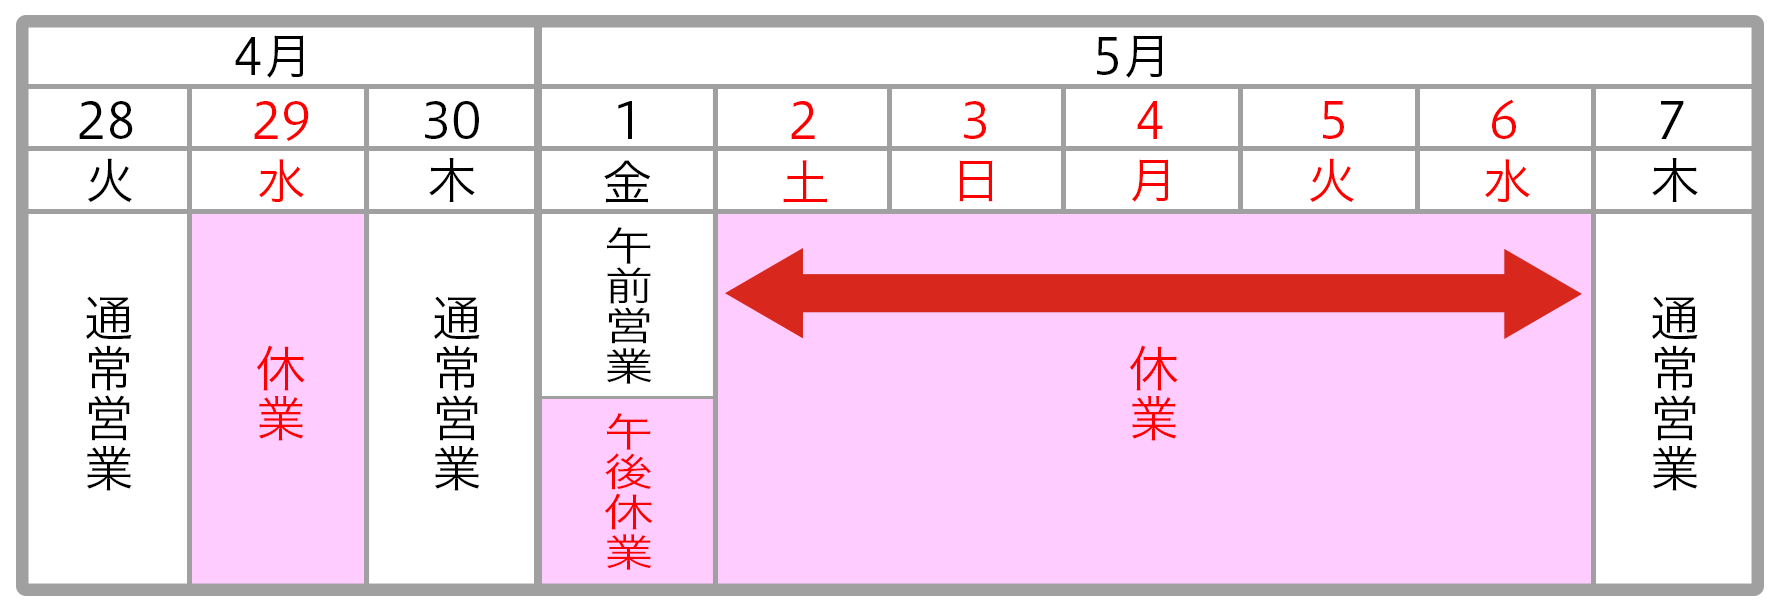 schedule_2015